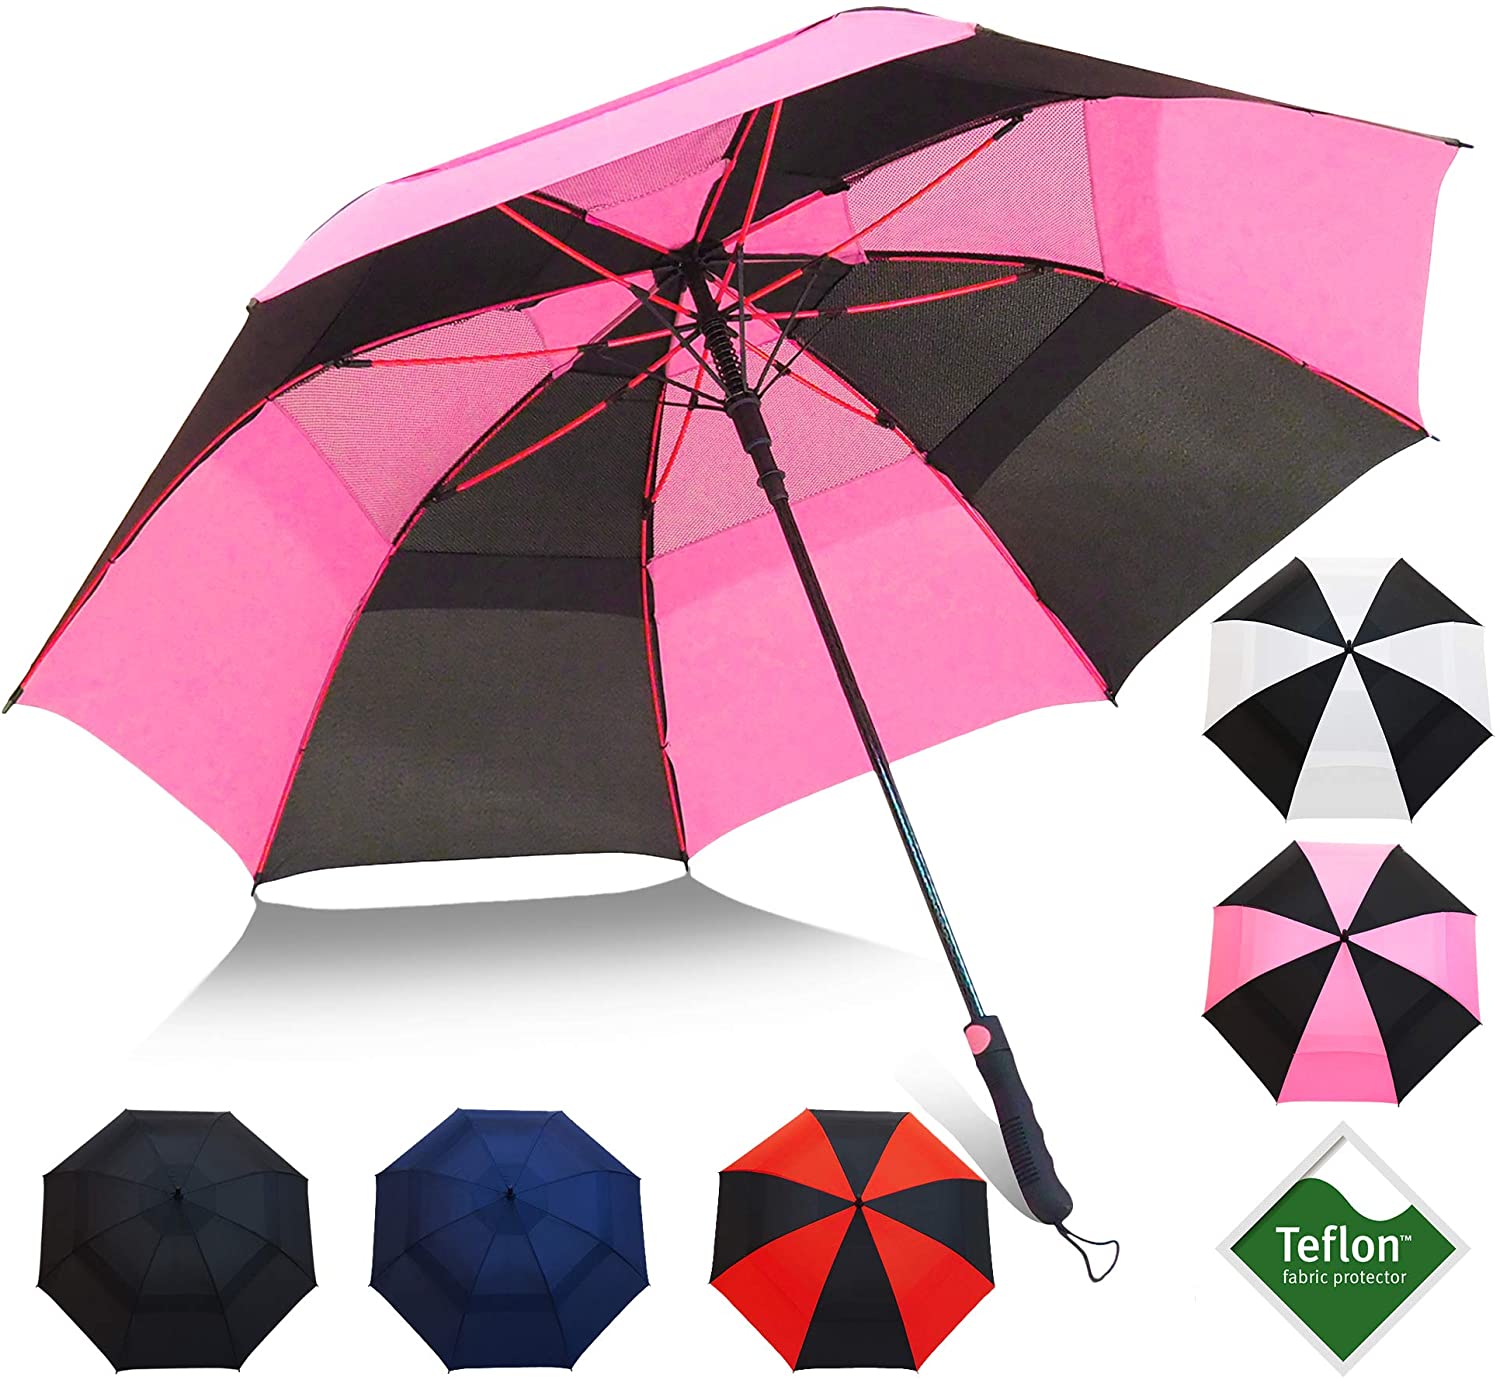 Repel Umbrella 60-Inch Double Vented Teflon Coated Golf Umbrella